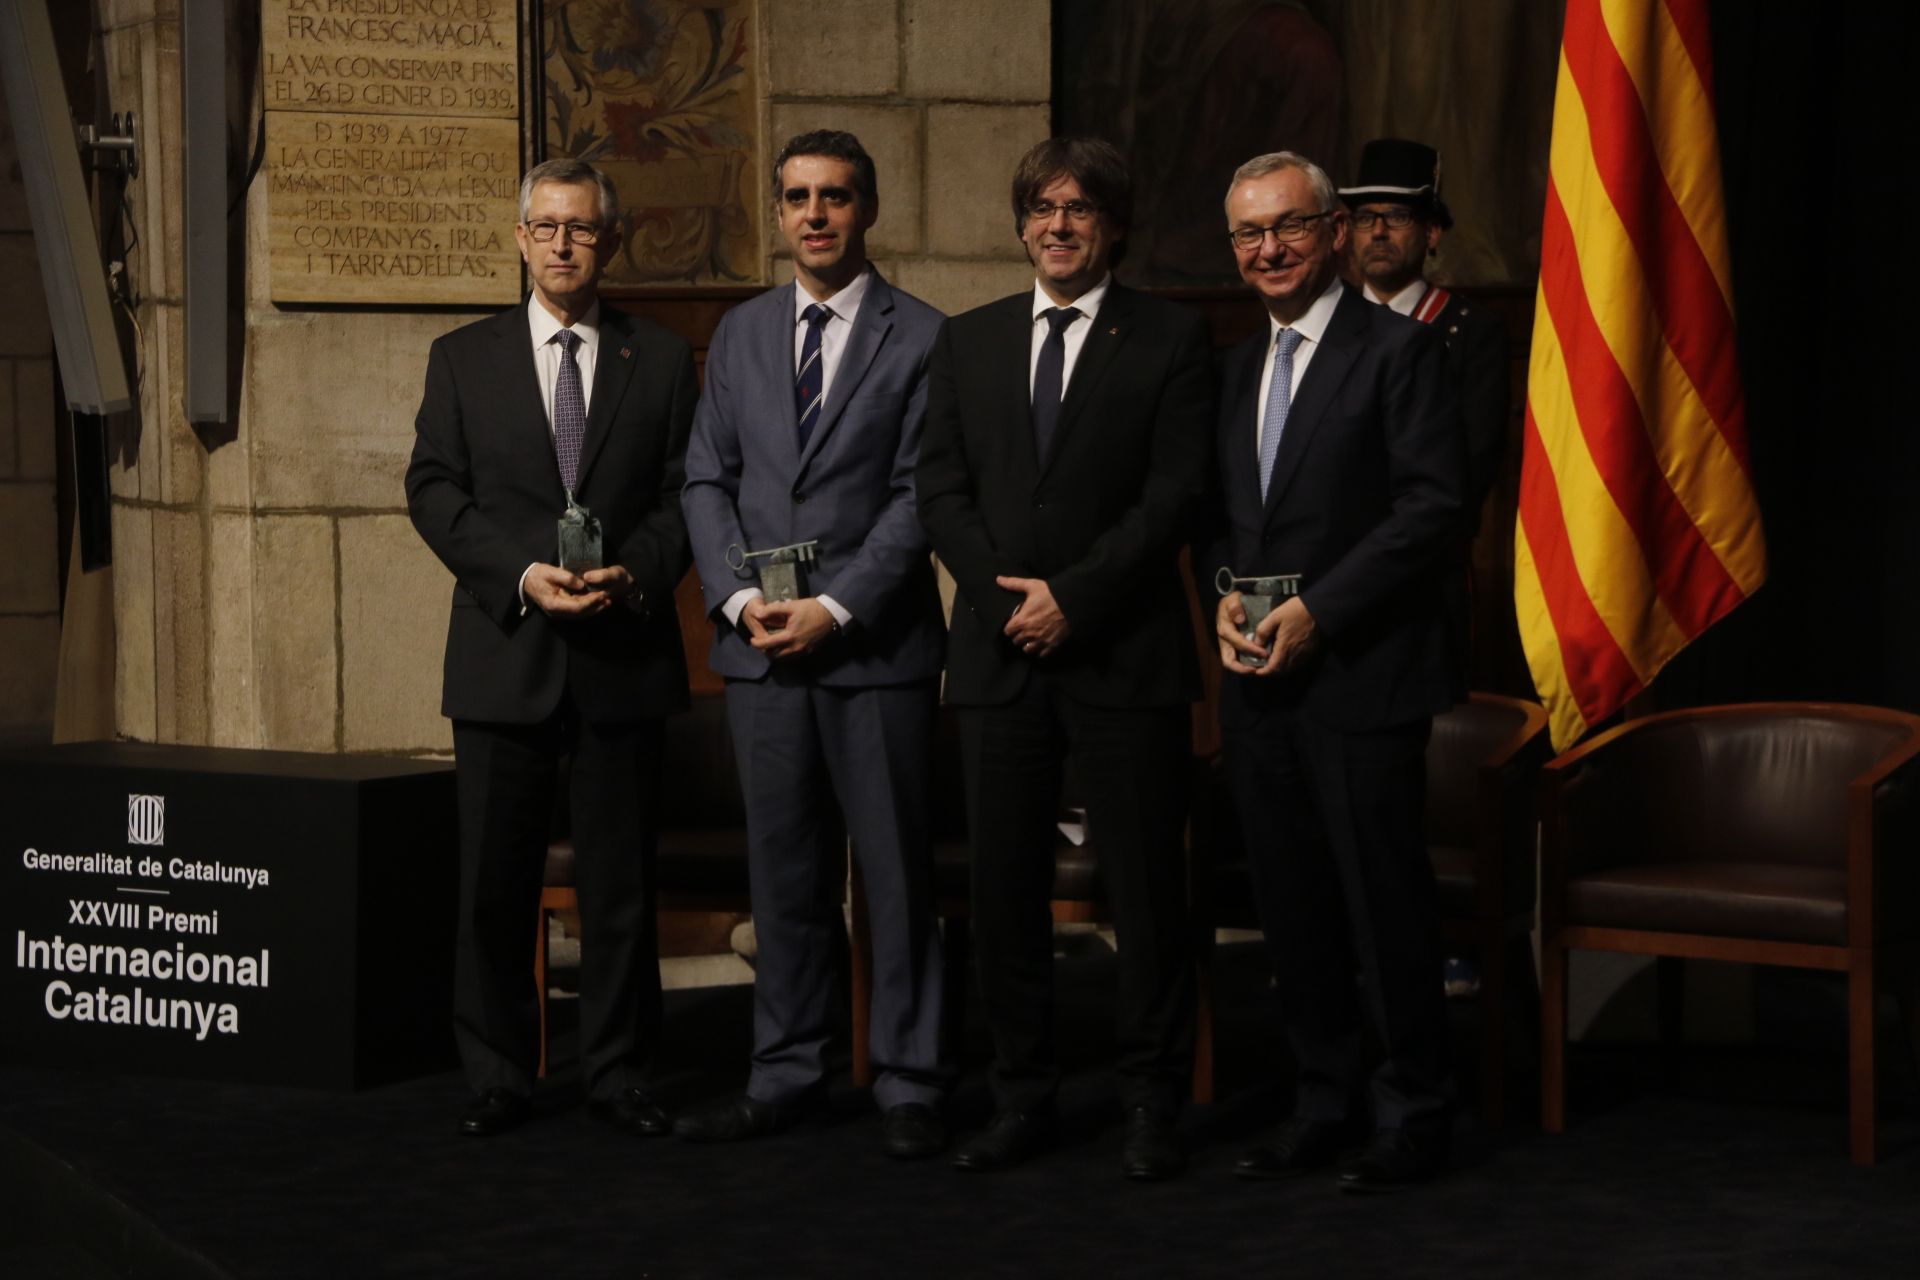 Tres oncólogos catalanes reciben el Premi Internacional Catalunya por su tarea "en investigación"